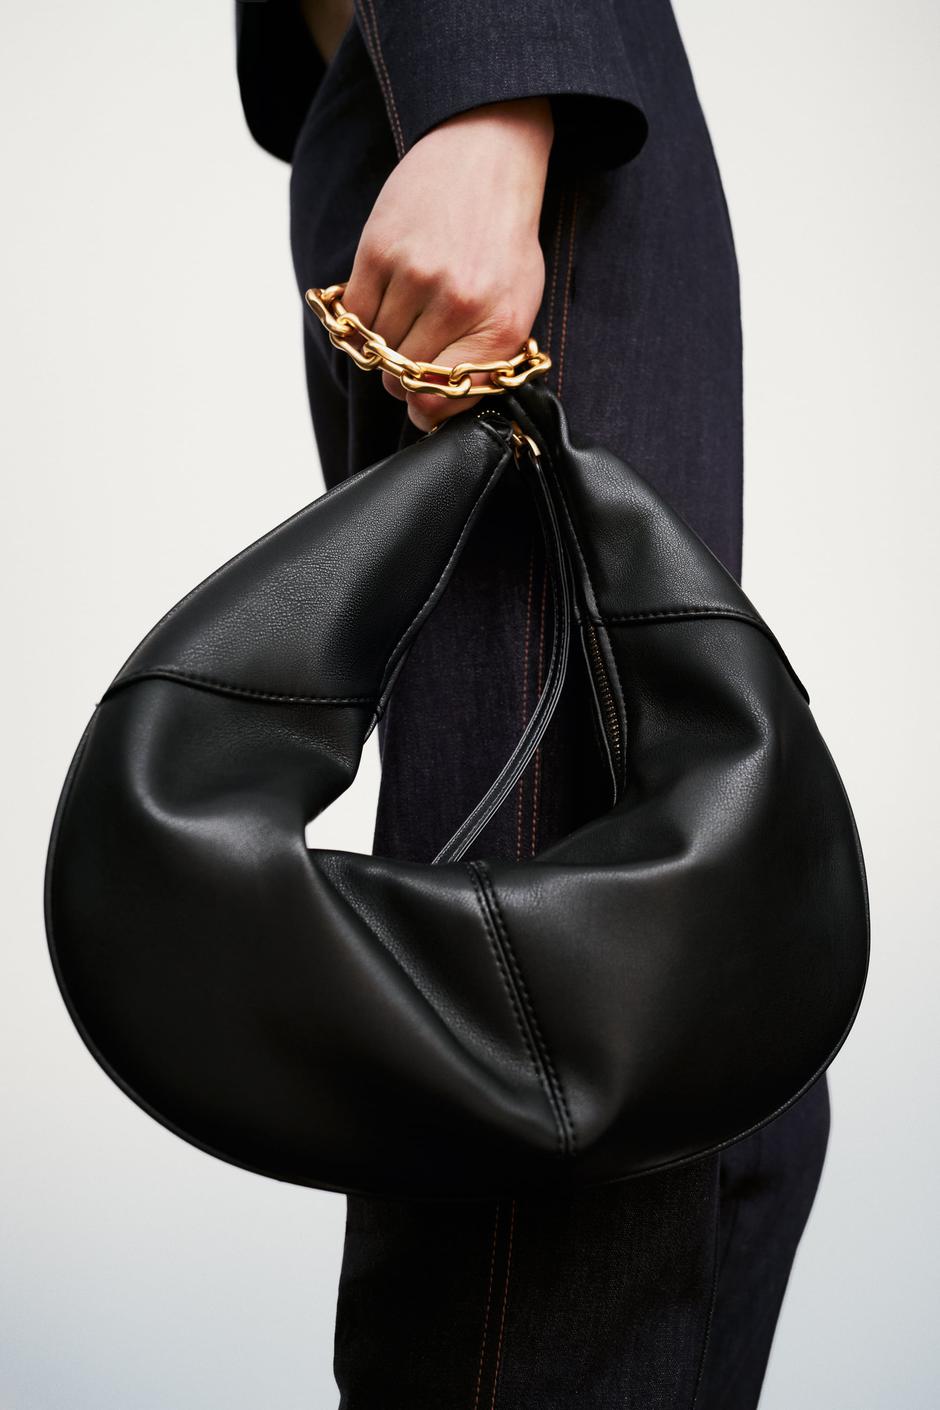 Foto: Zara, crna torba od umjetne kože koja ima zlatni lanac | Autor: Zara